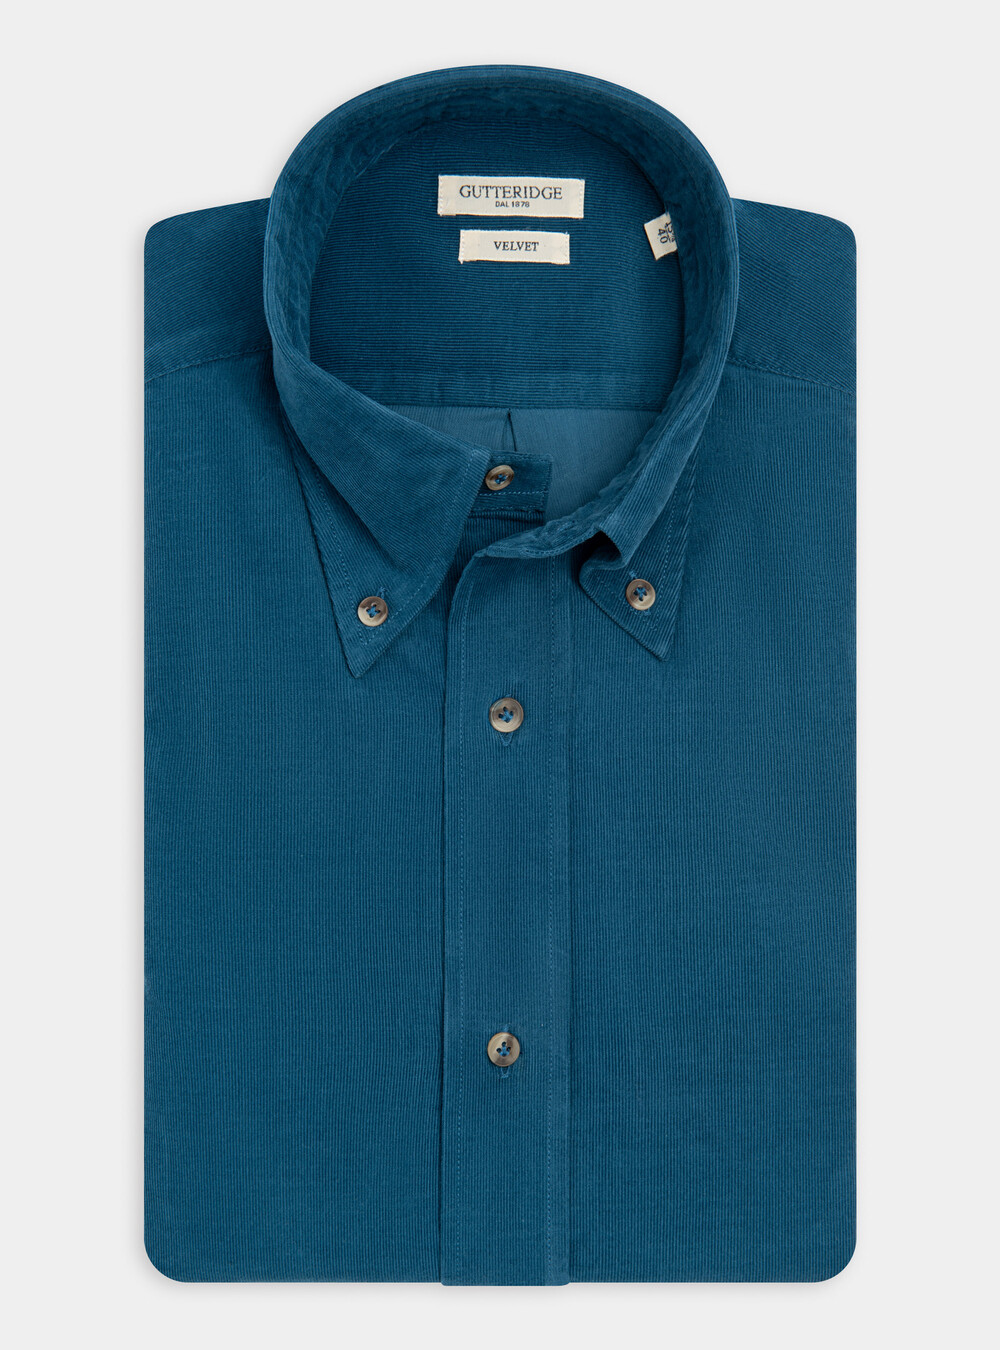 Camicia collo button down in velluto | Gutteridge | Camicie Uomo